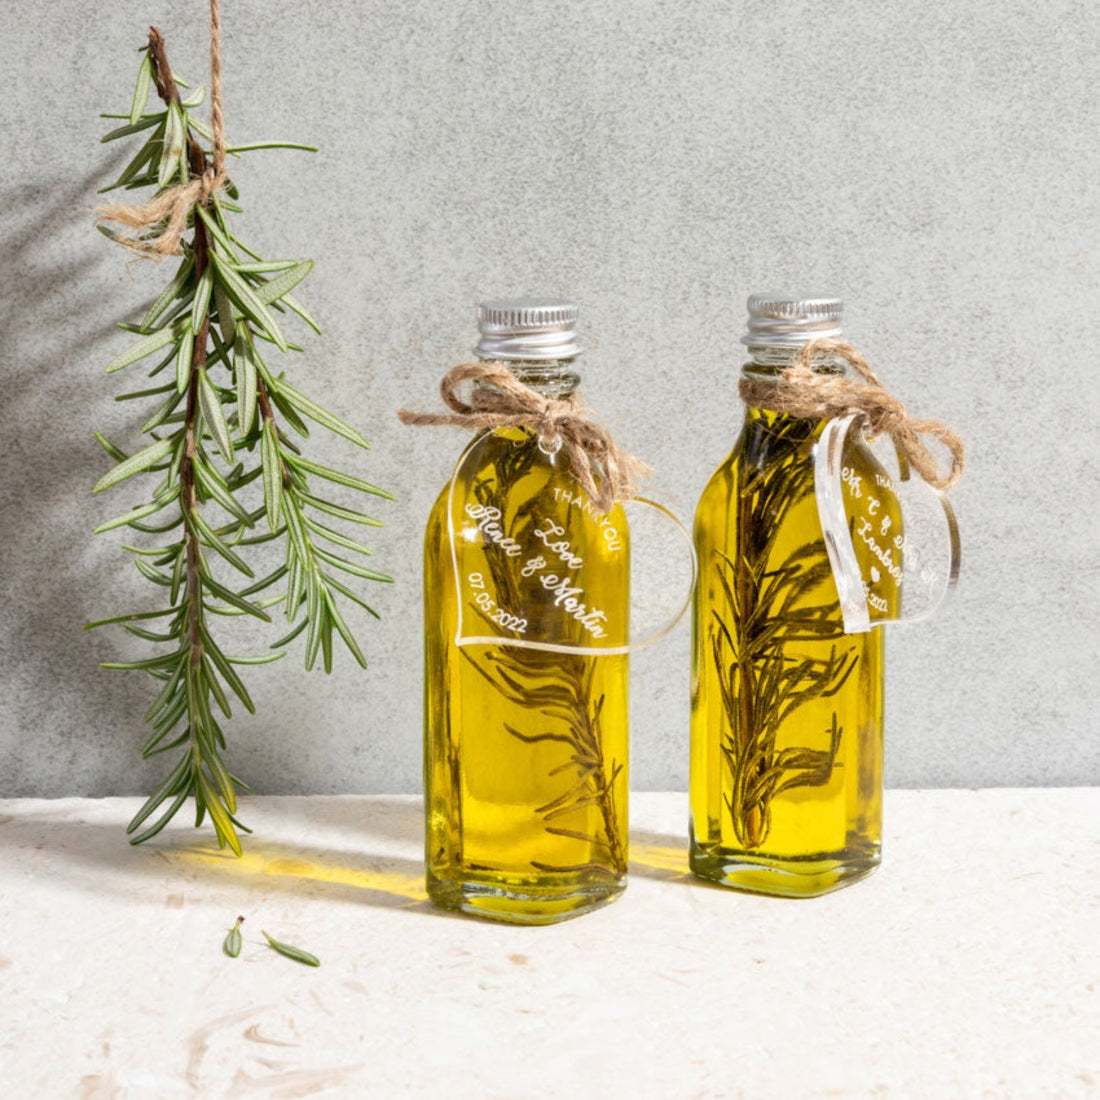 Greek Olive Oil Bonbonniere - Acrylic Tag